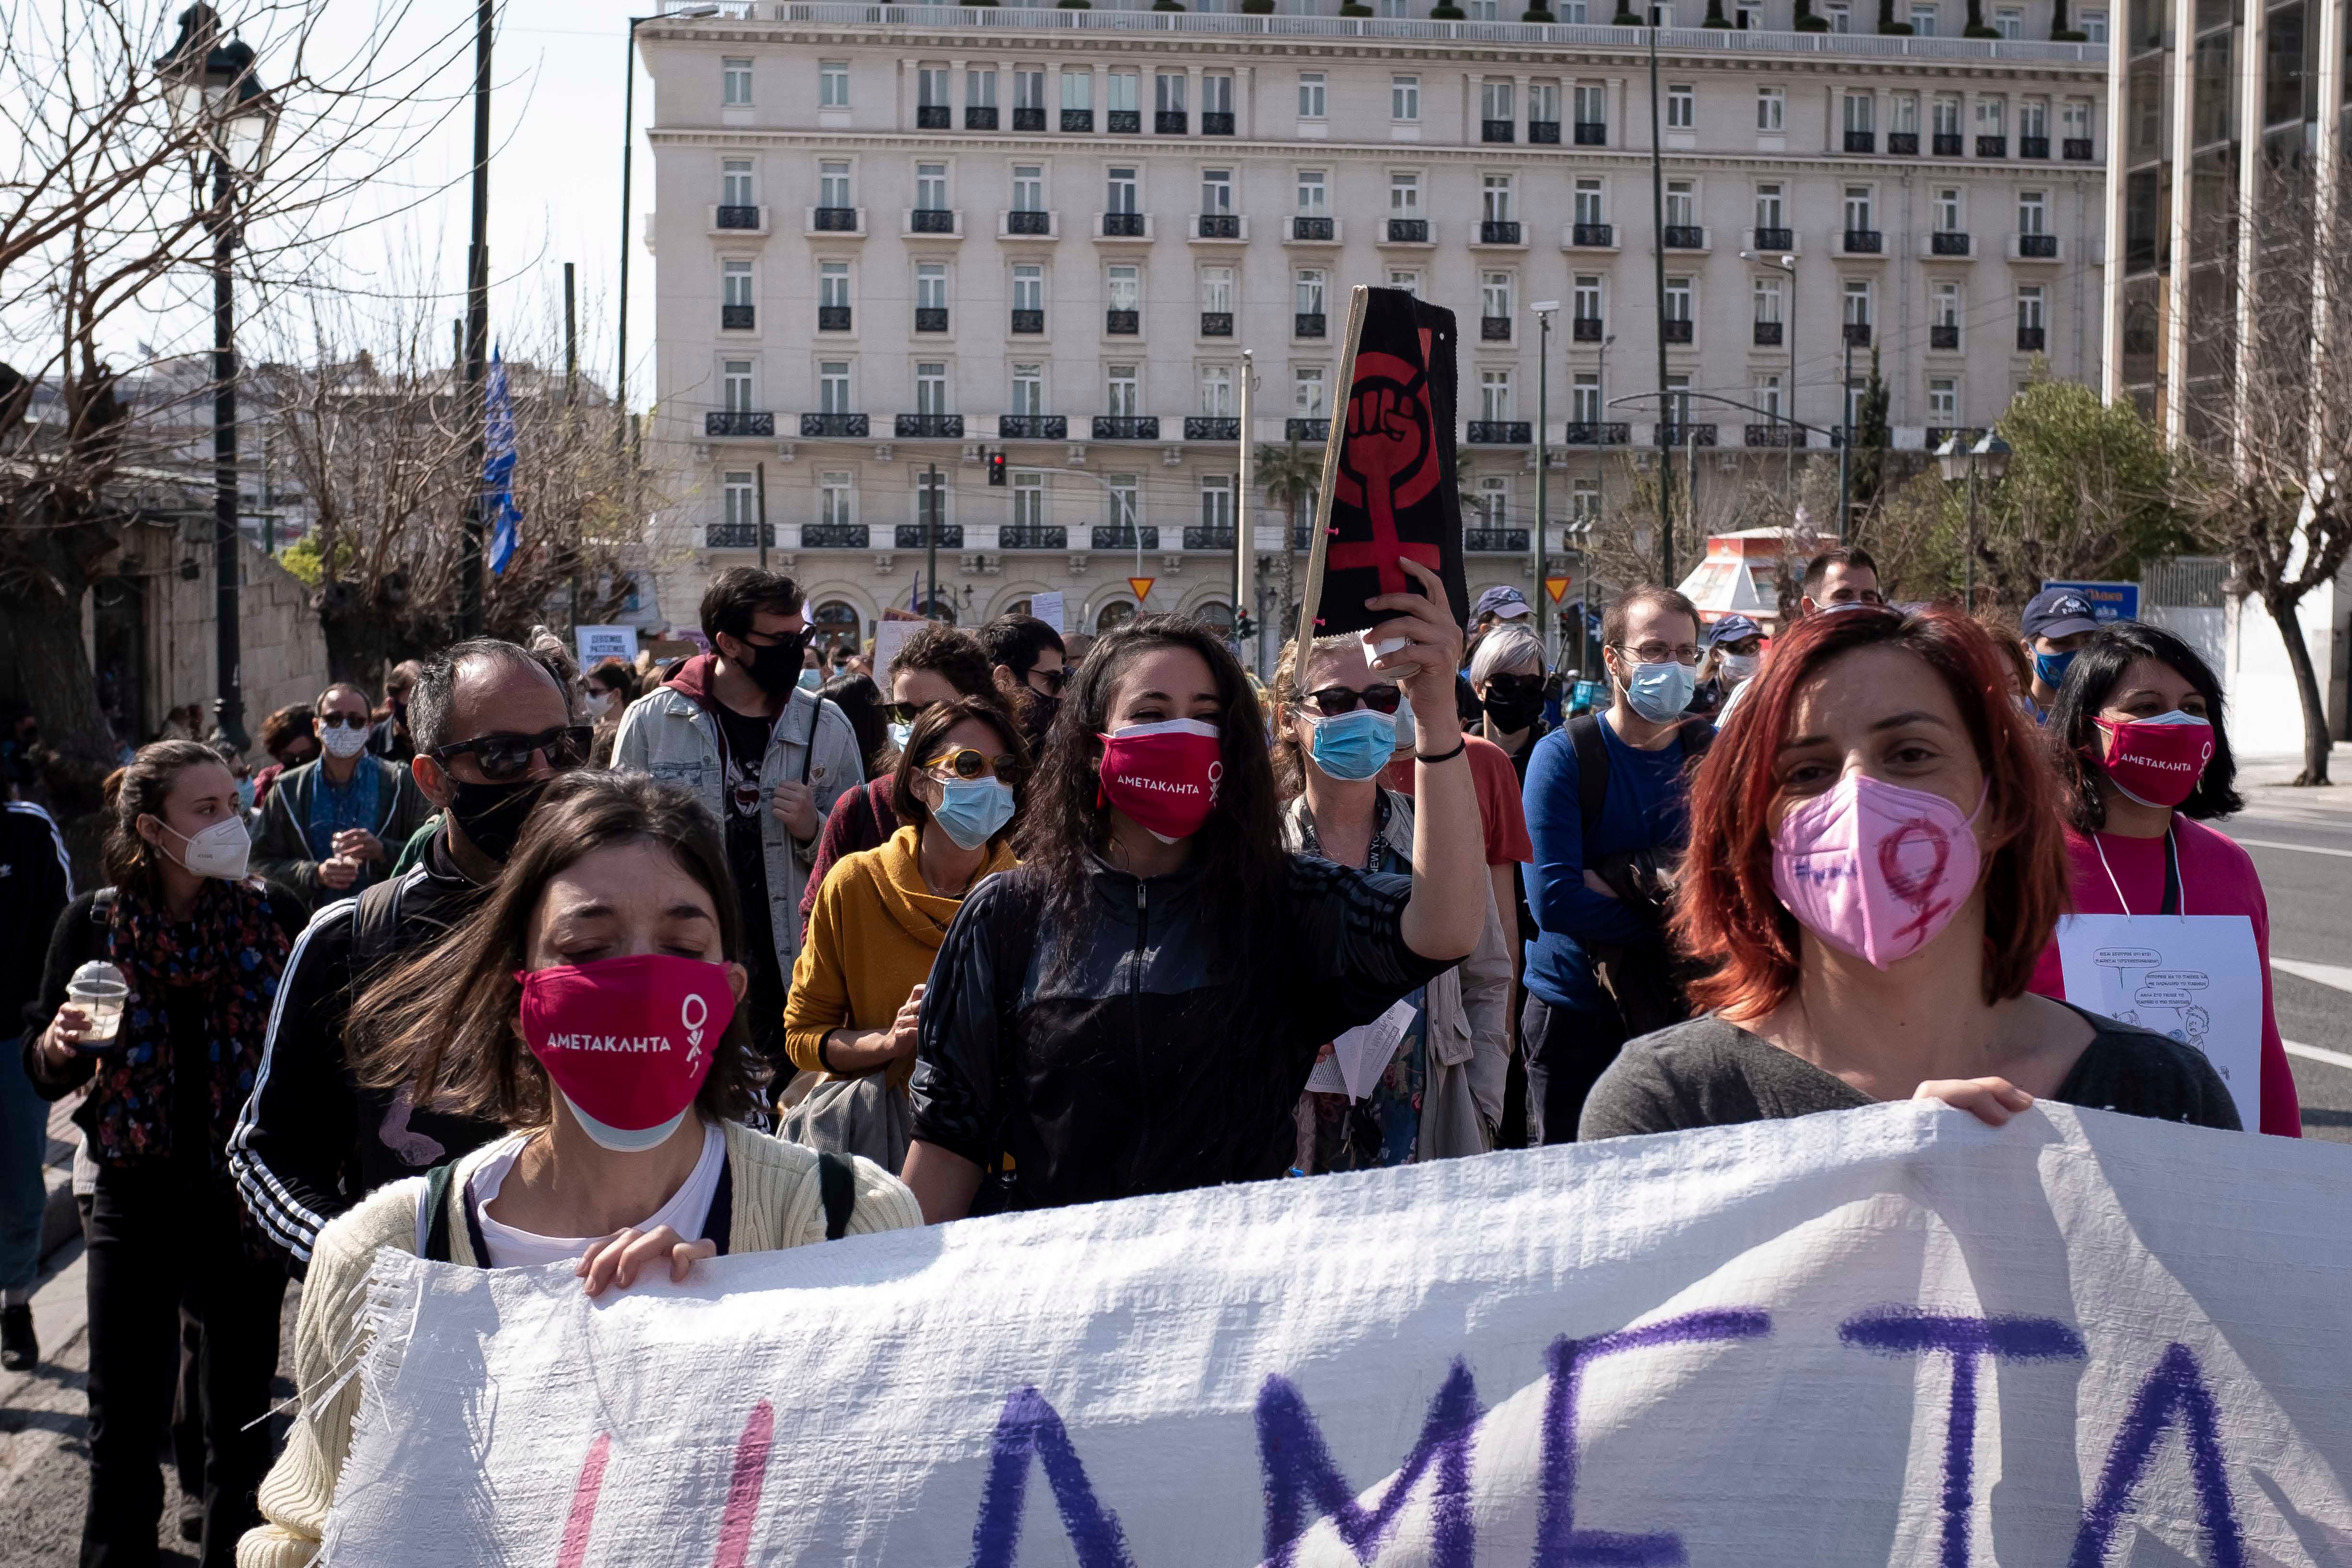 Διαμαρτυρία έξω από την Ελληνική Βουλή στην Αθήνα, στις 27 Μαρτίου του 2021, κατά του νομοσχεδίου που θα εισαγάγει την υποχρεωτική συνεπιμέλεια τέκνων στη περίπτωση χωρισμού ή διαζυγίου. 